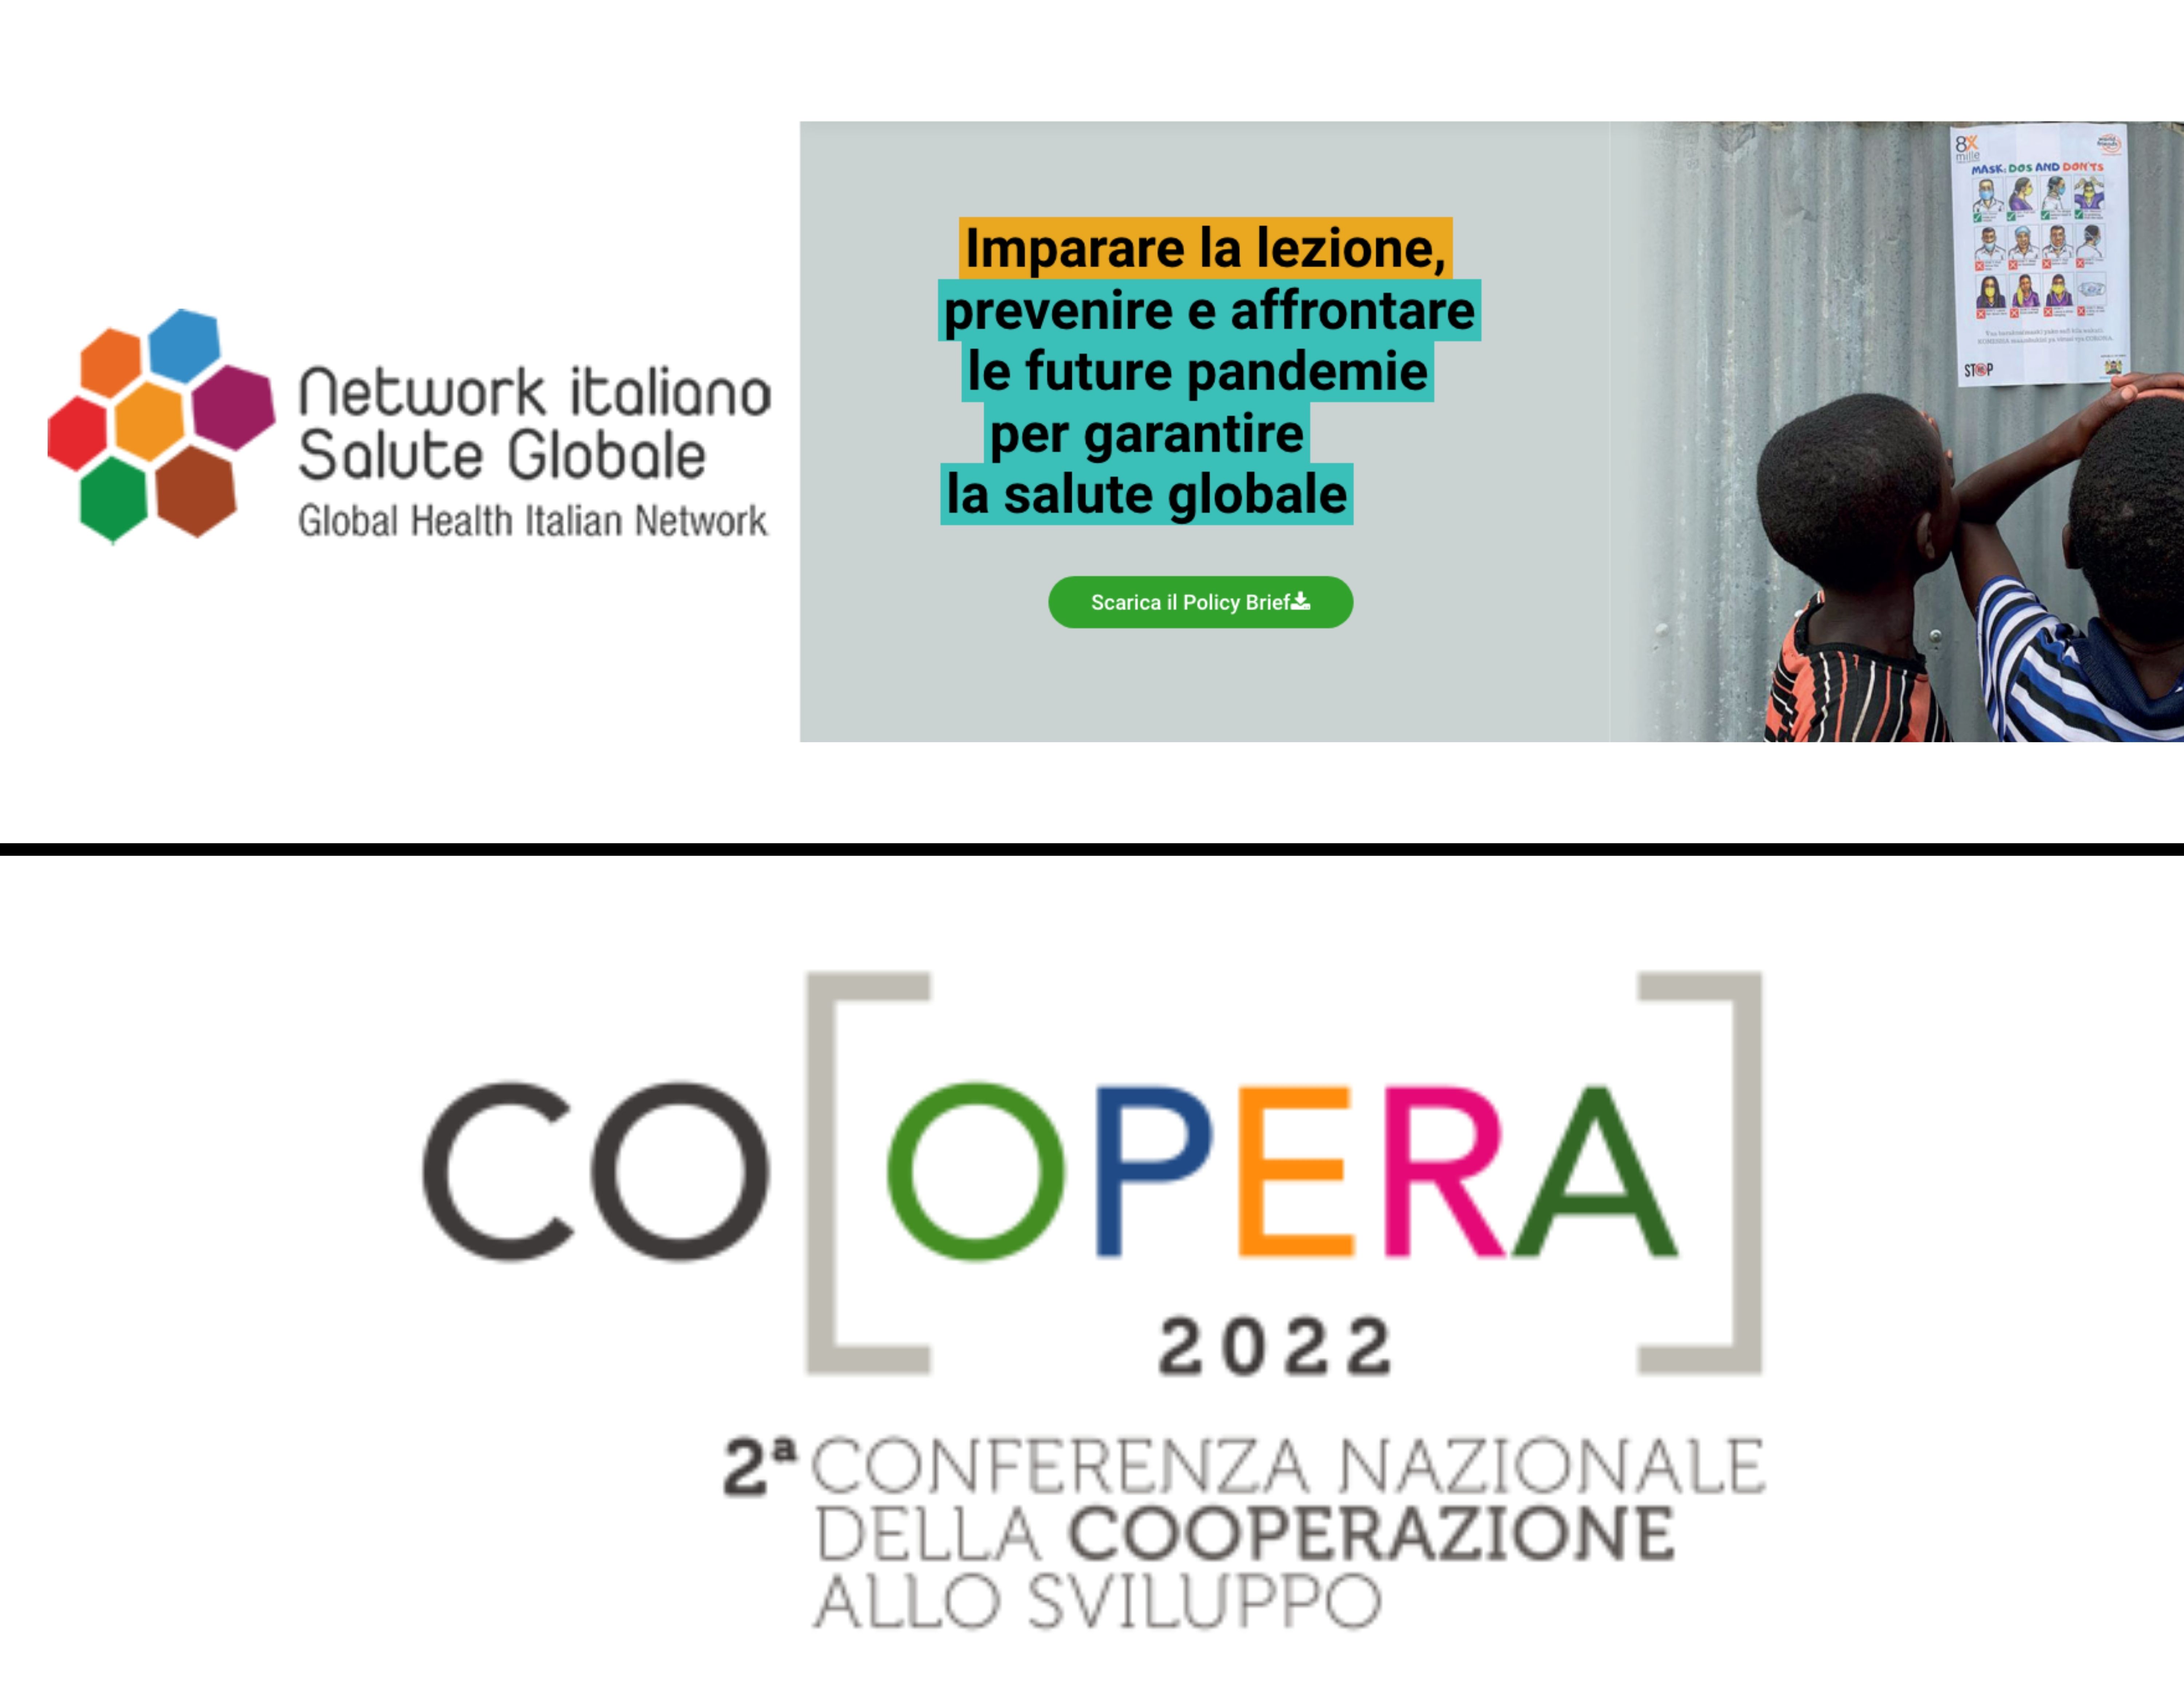 Medicus Mundi Italia a CO[OPERA] e alla presentazione del Policy Paper del Network della salute globale